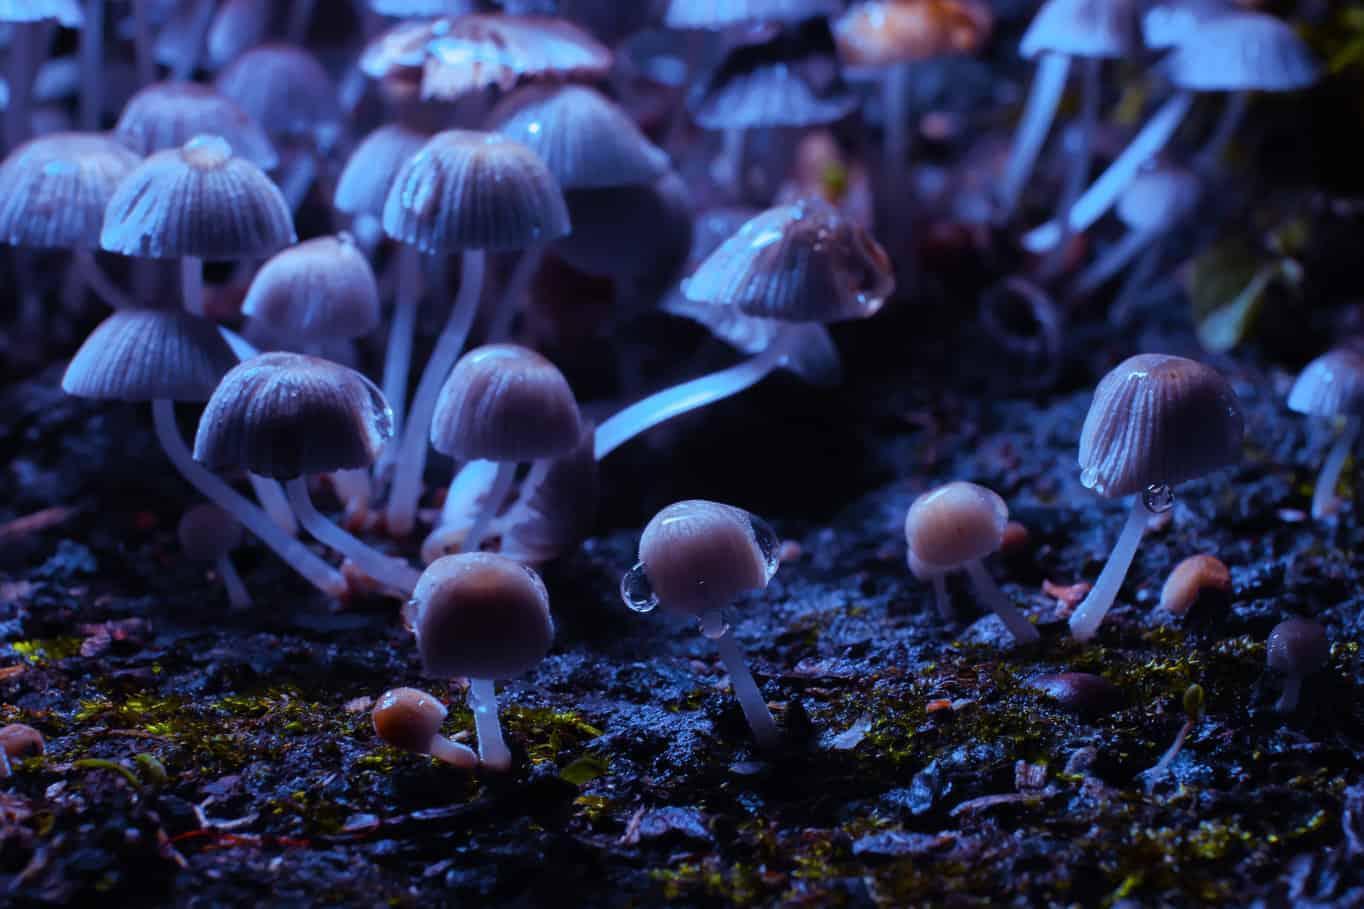 Psilocybin Mushrooms Growing Under Blacklight